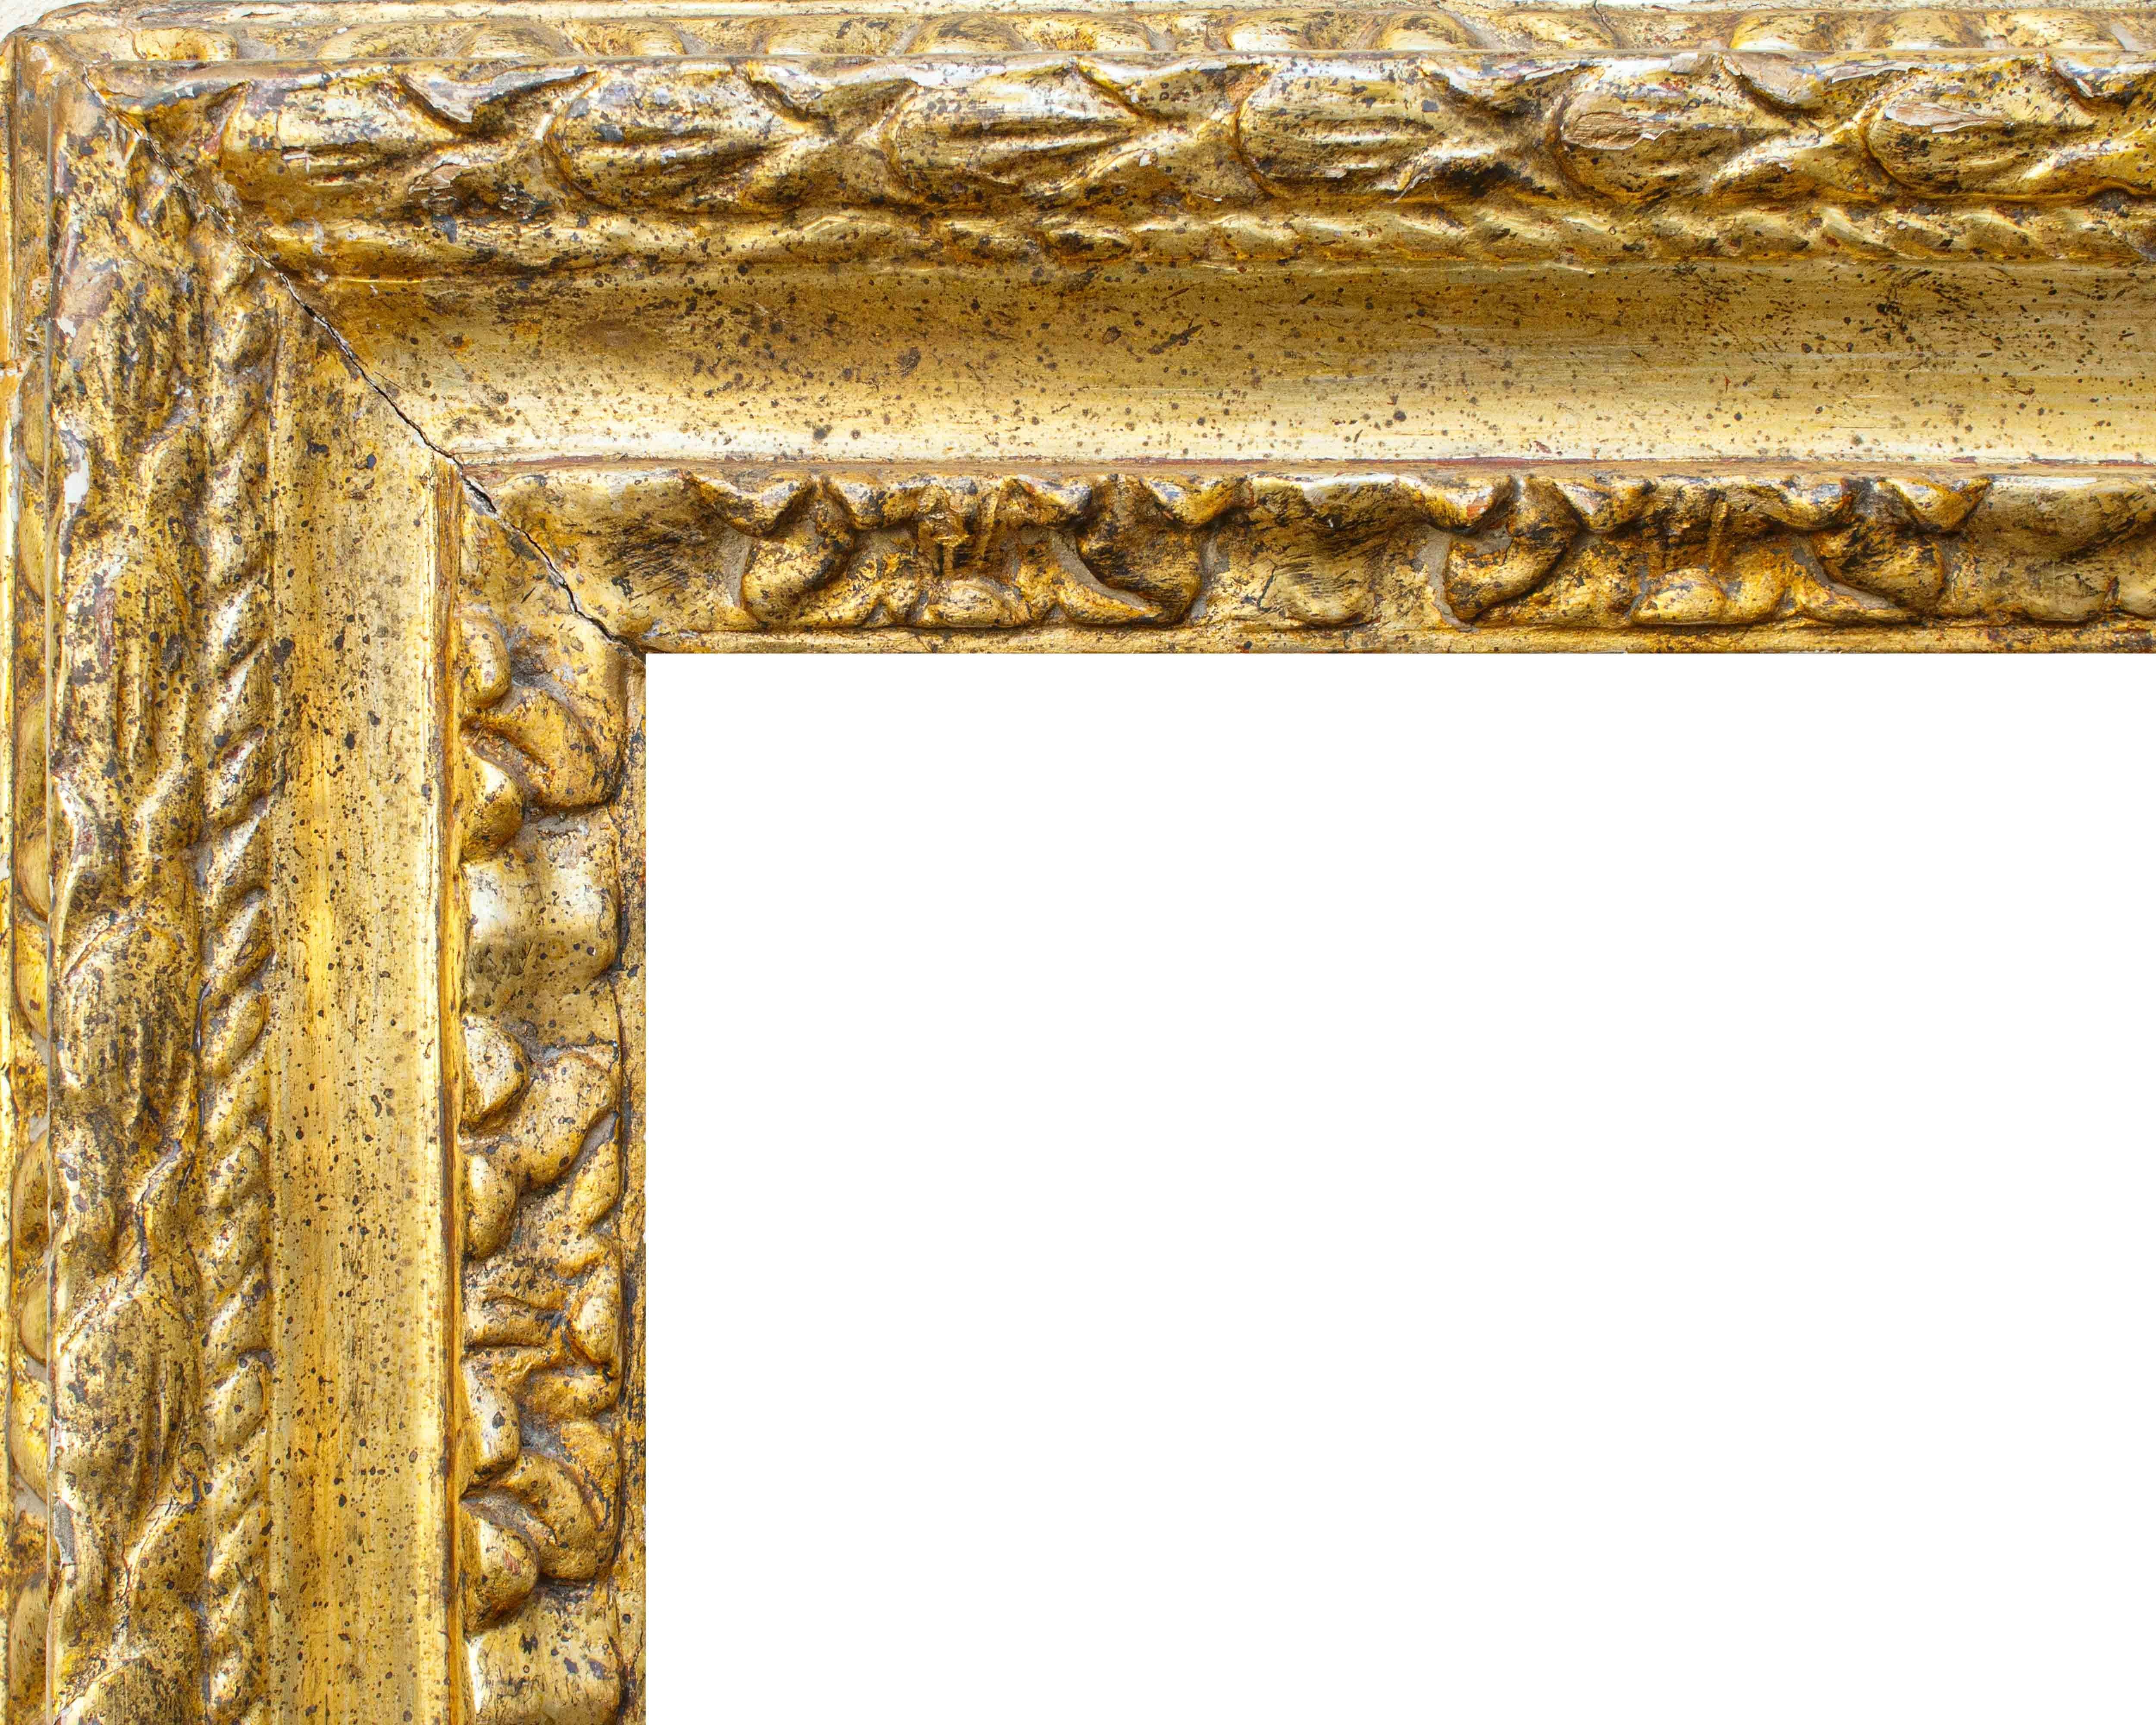 XVIIe siècle, Italie centrale

Cadre

Bois de méca sculpté et doré, 67 x 92 cm

Léger 45 x 71

Le cadre en question est en bois de mecque doré, sculpté de décors feuillagés sur deux ordres entrecoupés d'une gorge lisse et d'un ruban. 

La dorure à